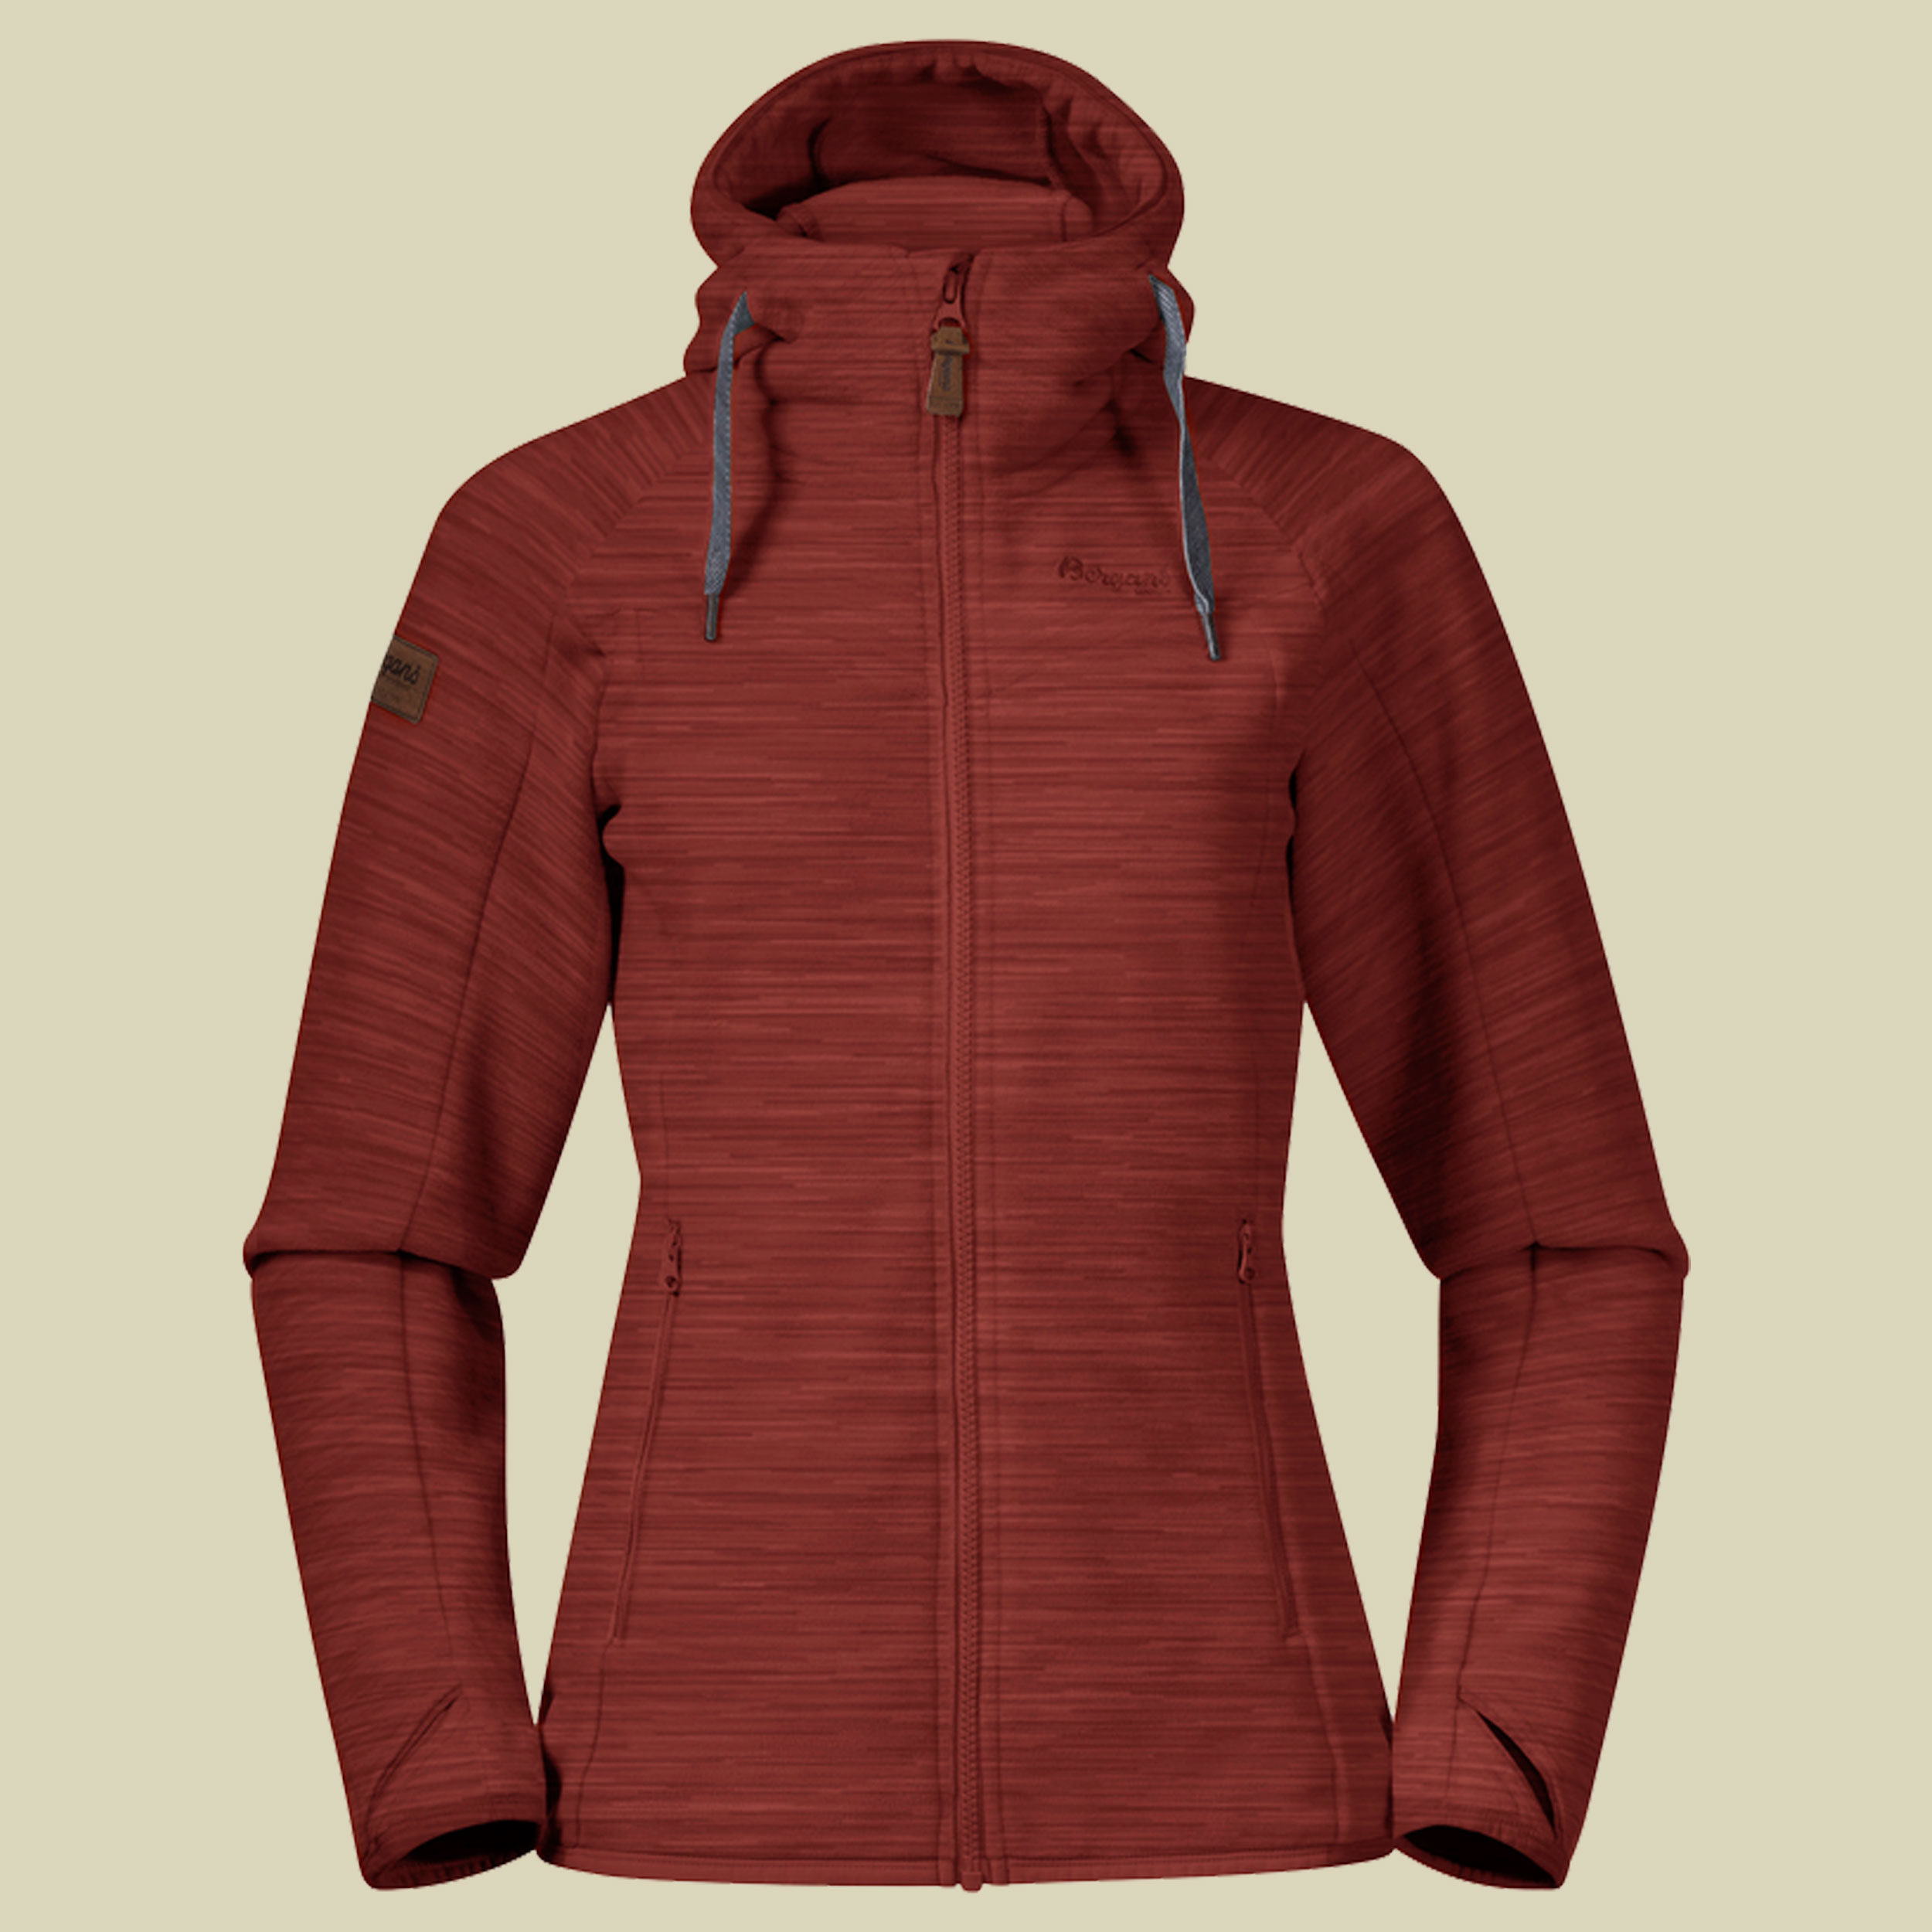 Hareid Fleece Jacket Women Größe XL Farbe chianti red